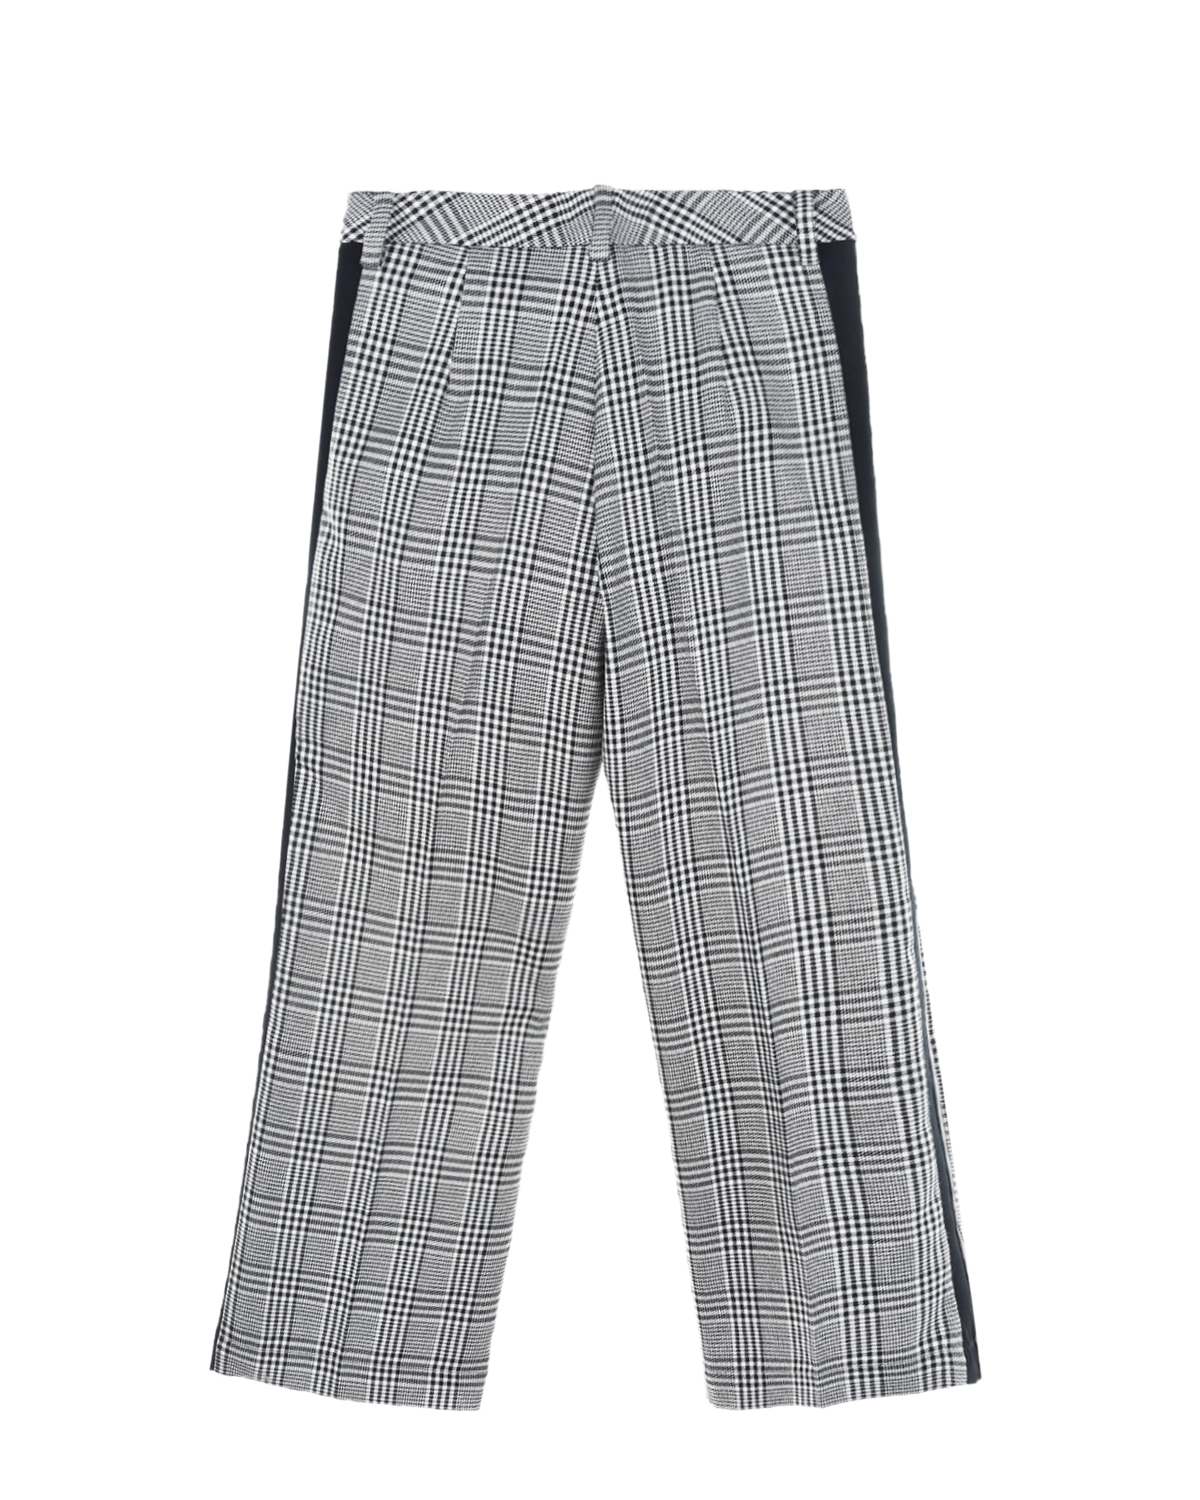 Клетчатые брюки с кожаными лампасами Monnalisa детские, размер 140, цвет серый - фото 2